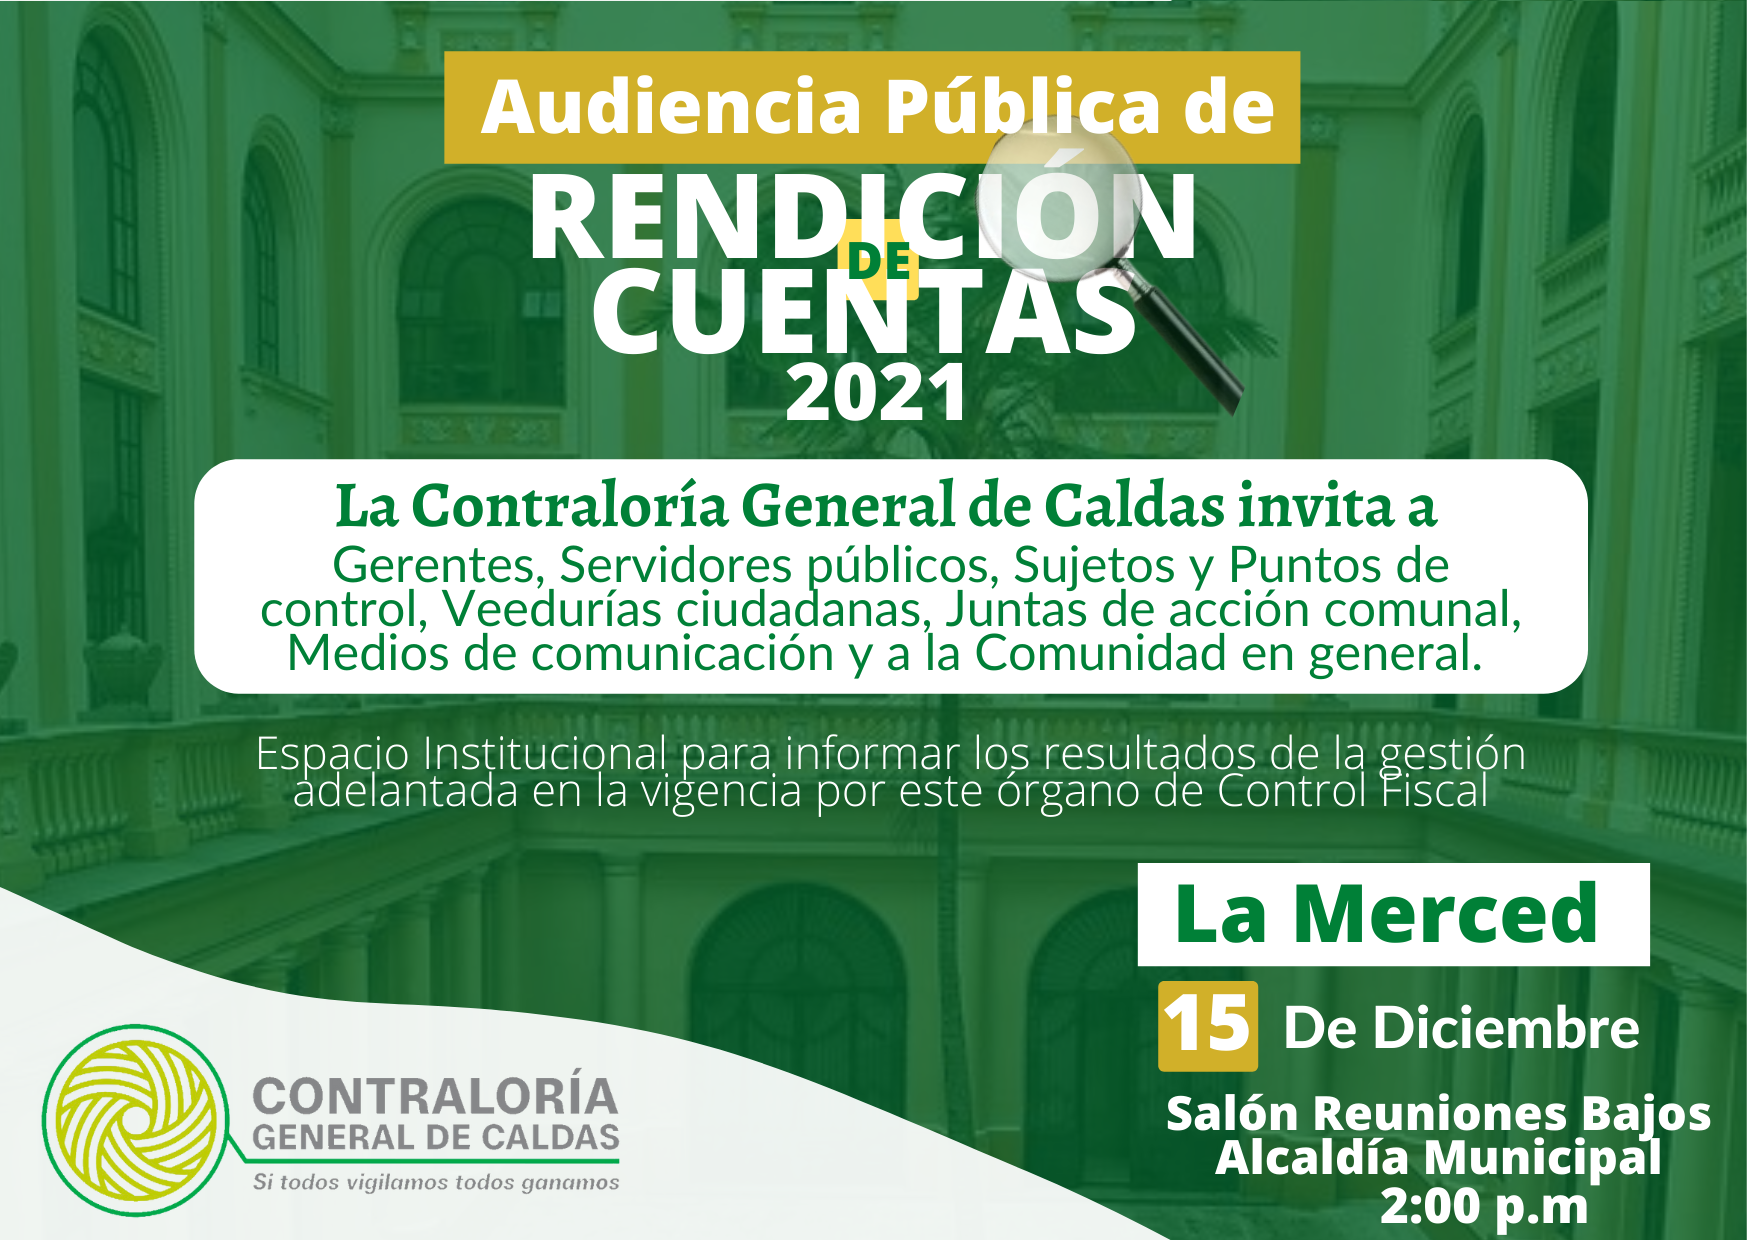 La Contraloría General de Caldas invita a la Audiencia Pública de Rendición de cuentas de la Vigencia 2021 que se realizará el día 15 de Diciembre, en el Municipio de La Merced.